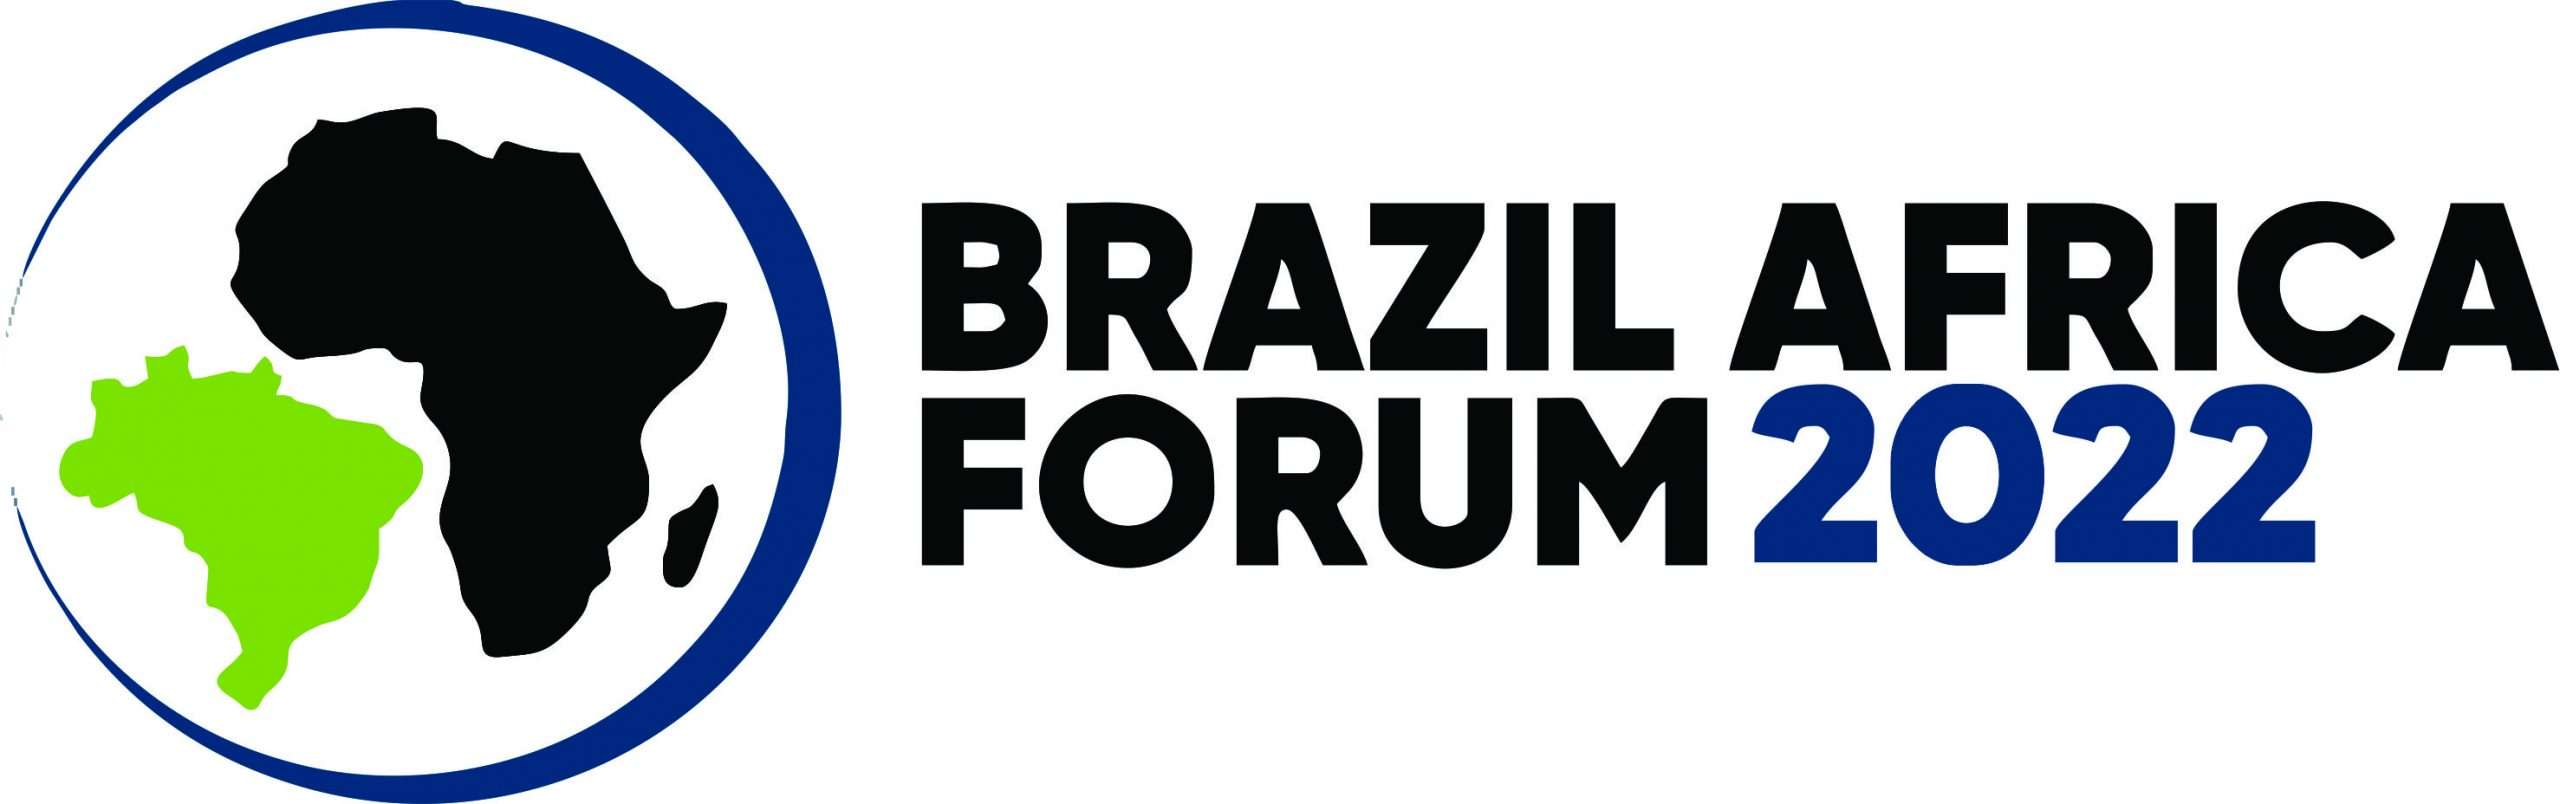 Fórum Brasil África 2022 Acontece na Próxima Semana com a Temática: “Cidades Sustentáveis: Desafios Globais, Soluções Locais”